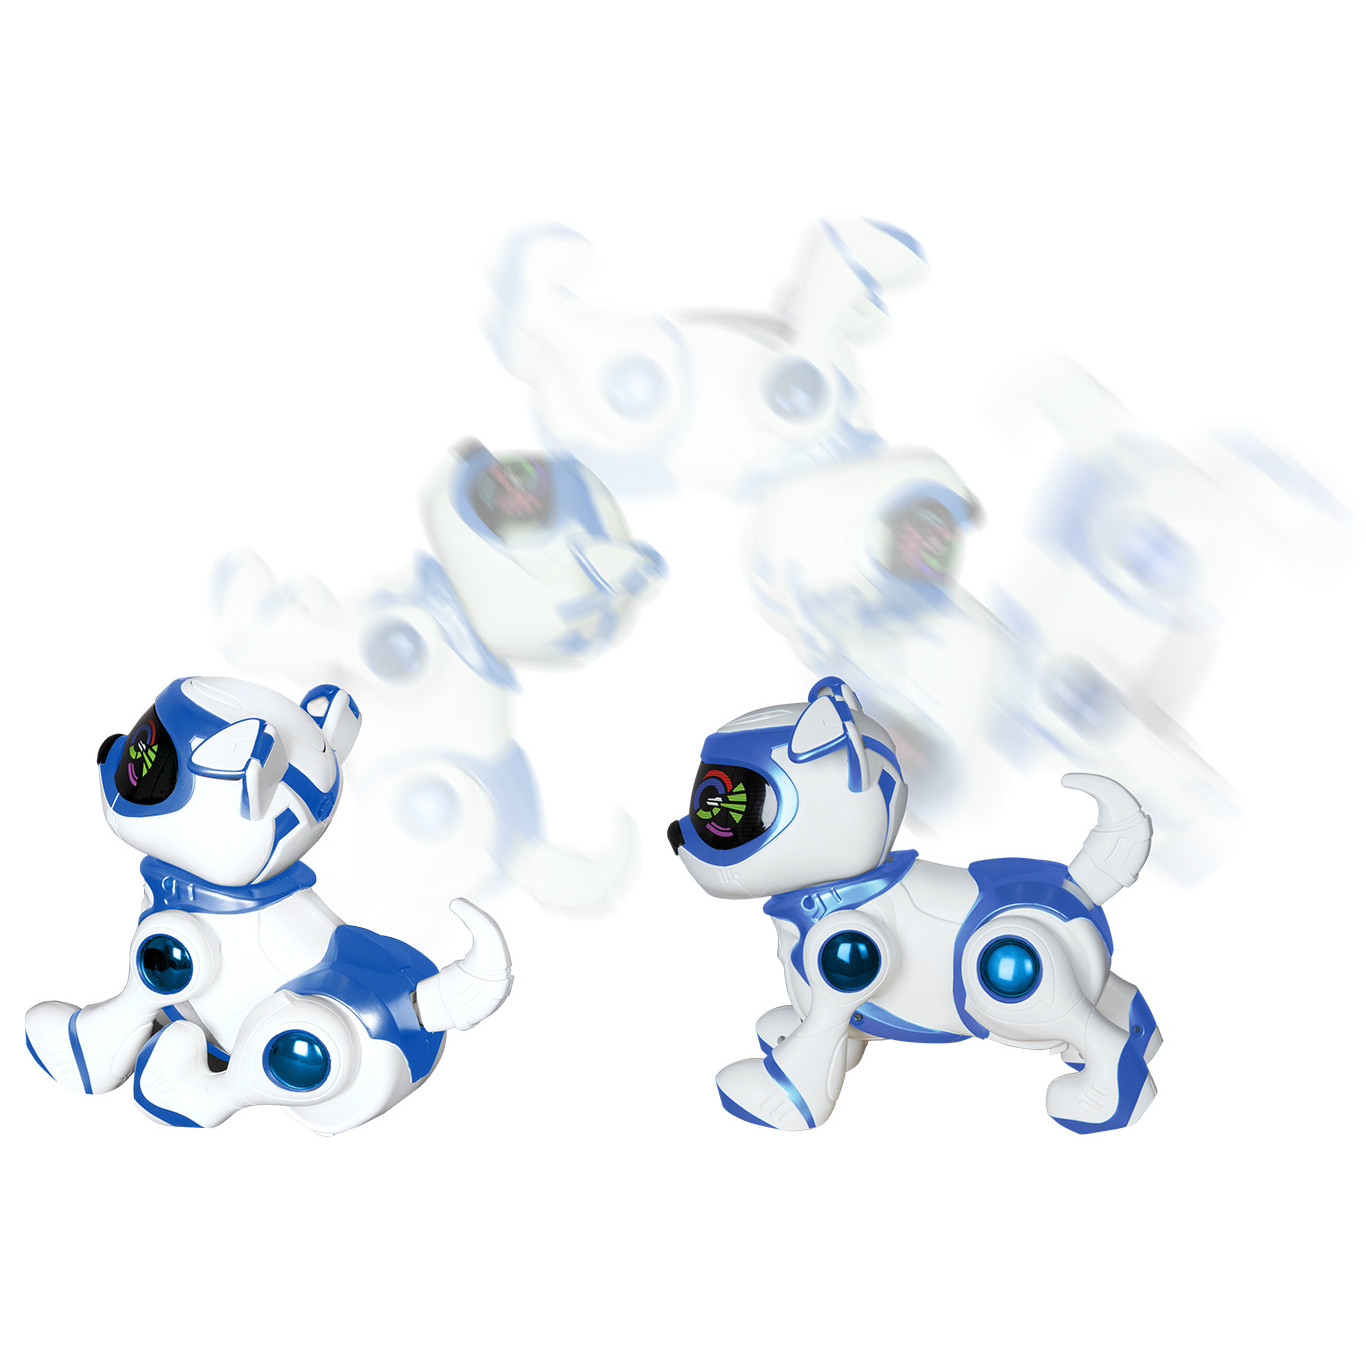 Robot Chien Splash Toys TEKSTA Puppy bleu - BestofRobots